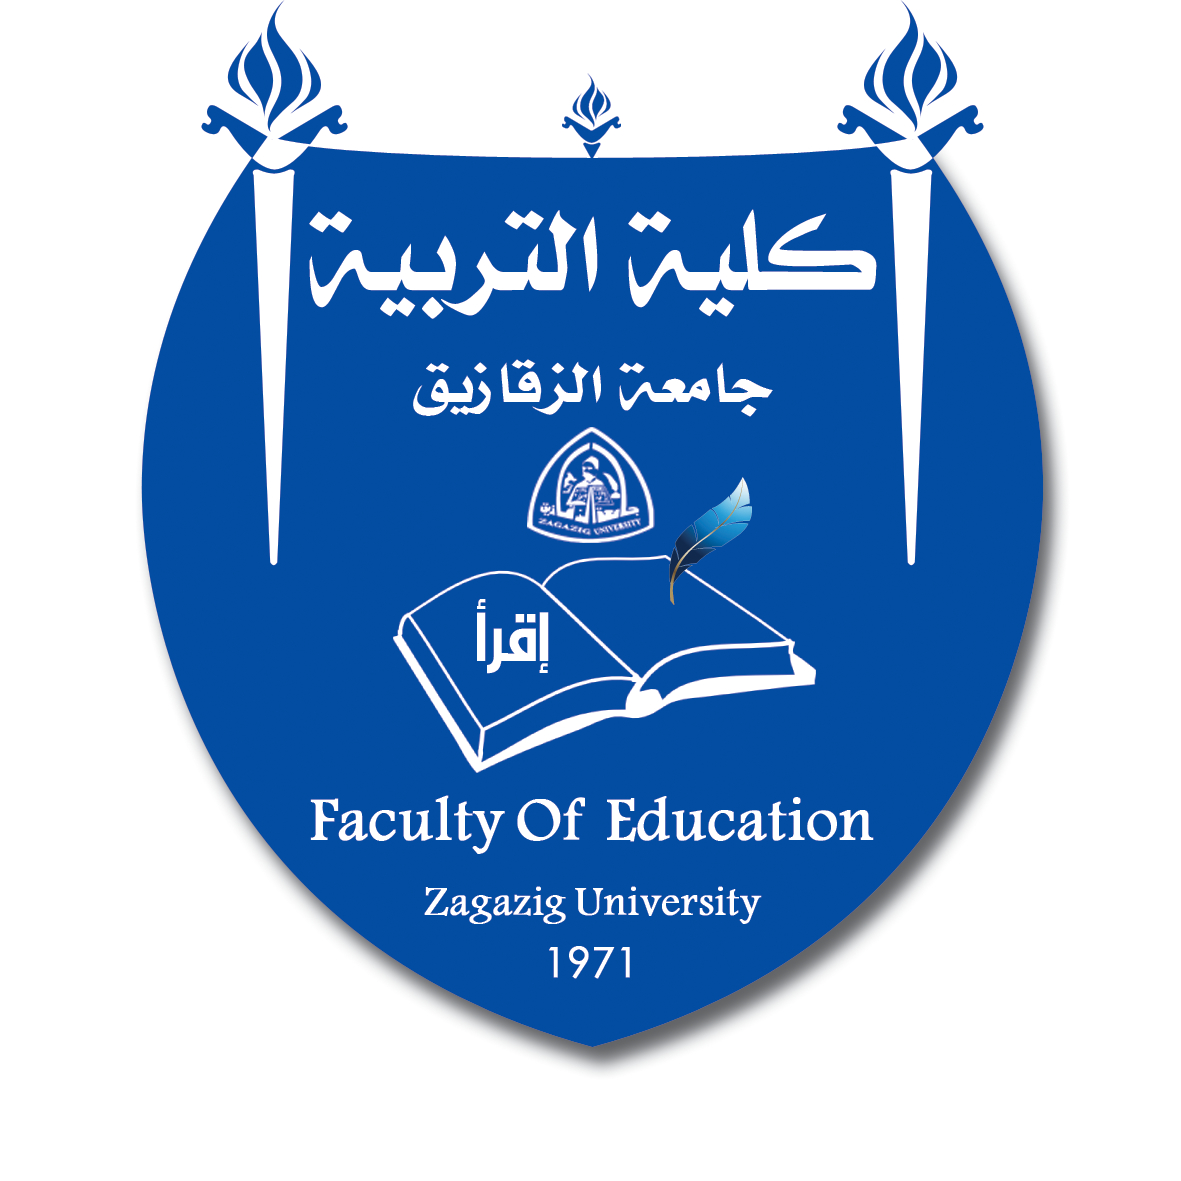 تم اعتماد الخطط الدراسية للفصل الدراسى الثانى للعام الجامعى 2012/2013